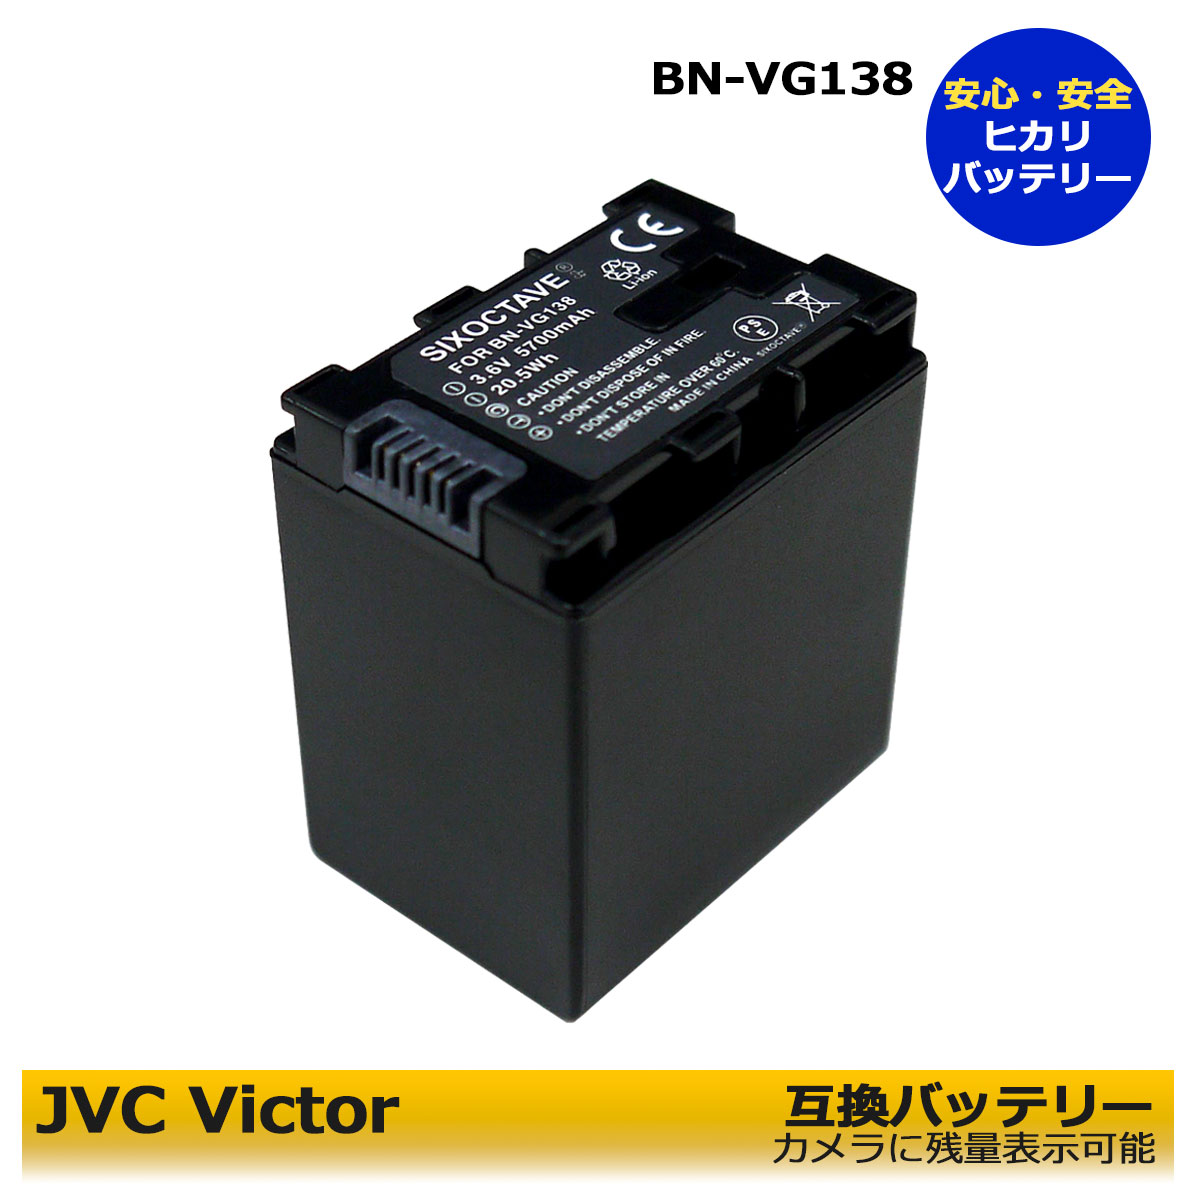 日本未発売 上質で快適 互換バッテリー 残量表示可能純正 互換充電器でも充電可能大容量バッテリー BN-VG138 BN-VG129 ≪あす楽対応≫送料無料 Jvc Victor ビクター 1個 純正充電器で充電可能 残量表示可能 GZ-HM33 GZ-HM50 GZ-HM99 GZ-HM133 GZ-HM177 GZ-HM350 GZ-HM390 GZ-HM438 GZ-HM450 GZ-HM460 idealatte.it idealatte.it